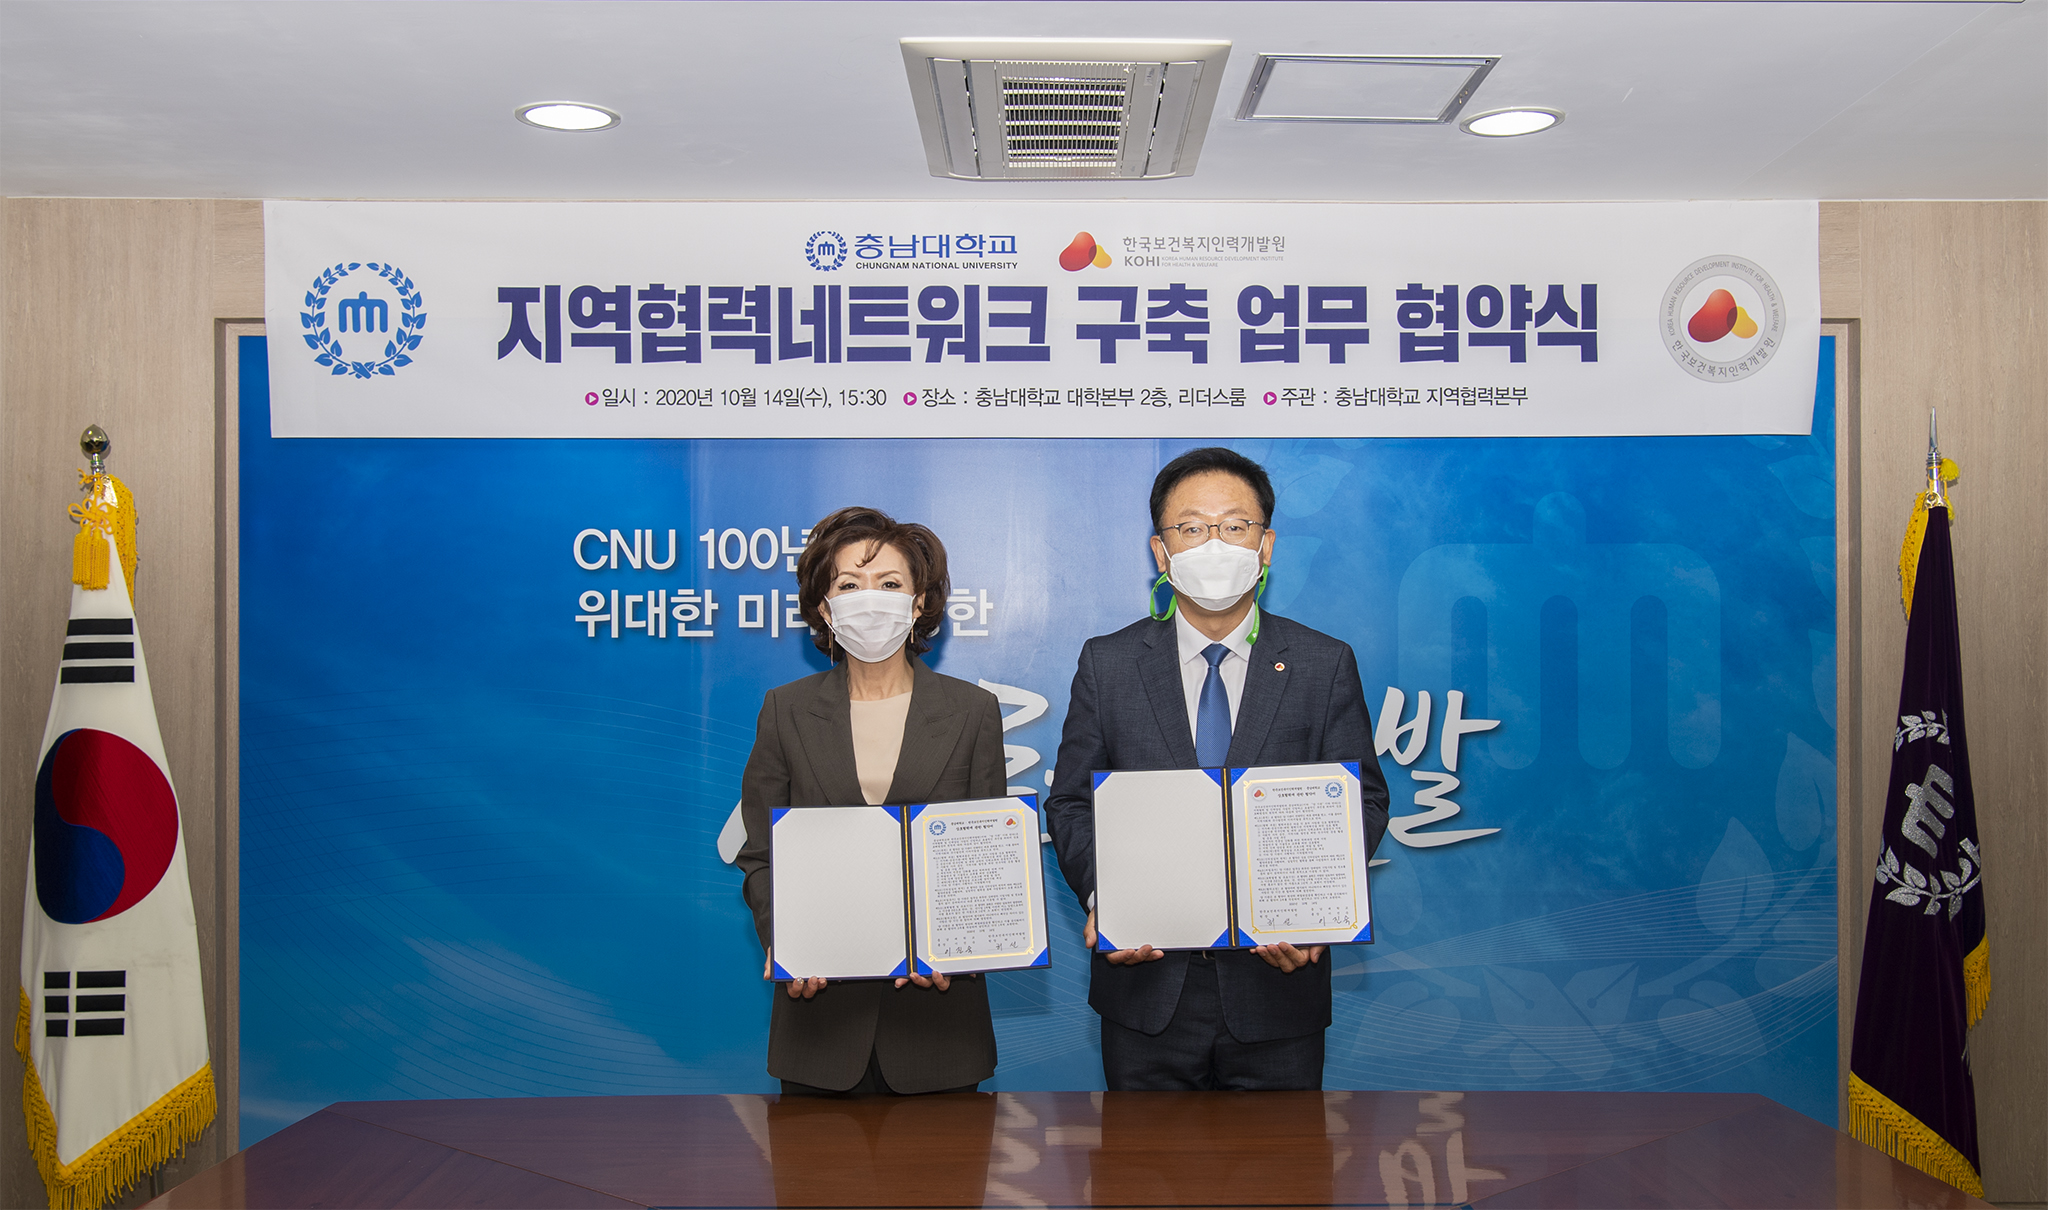 한국보건복지인력개발원 업무 협약식 [2020. 10. 14.(수) 15:30] 사진2